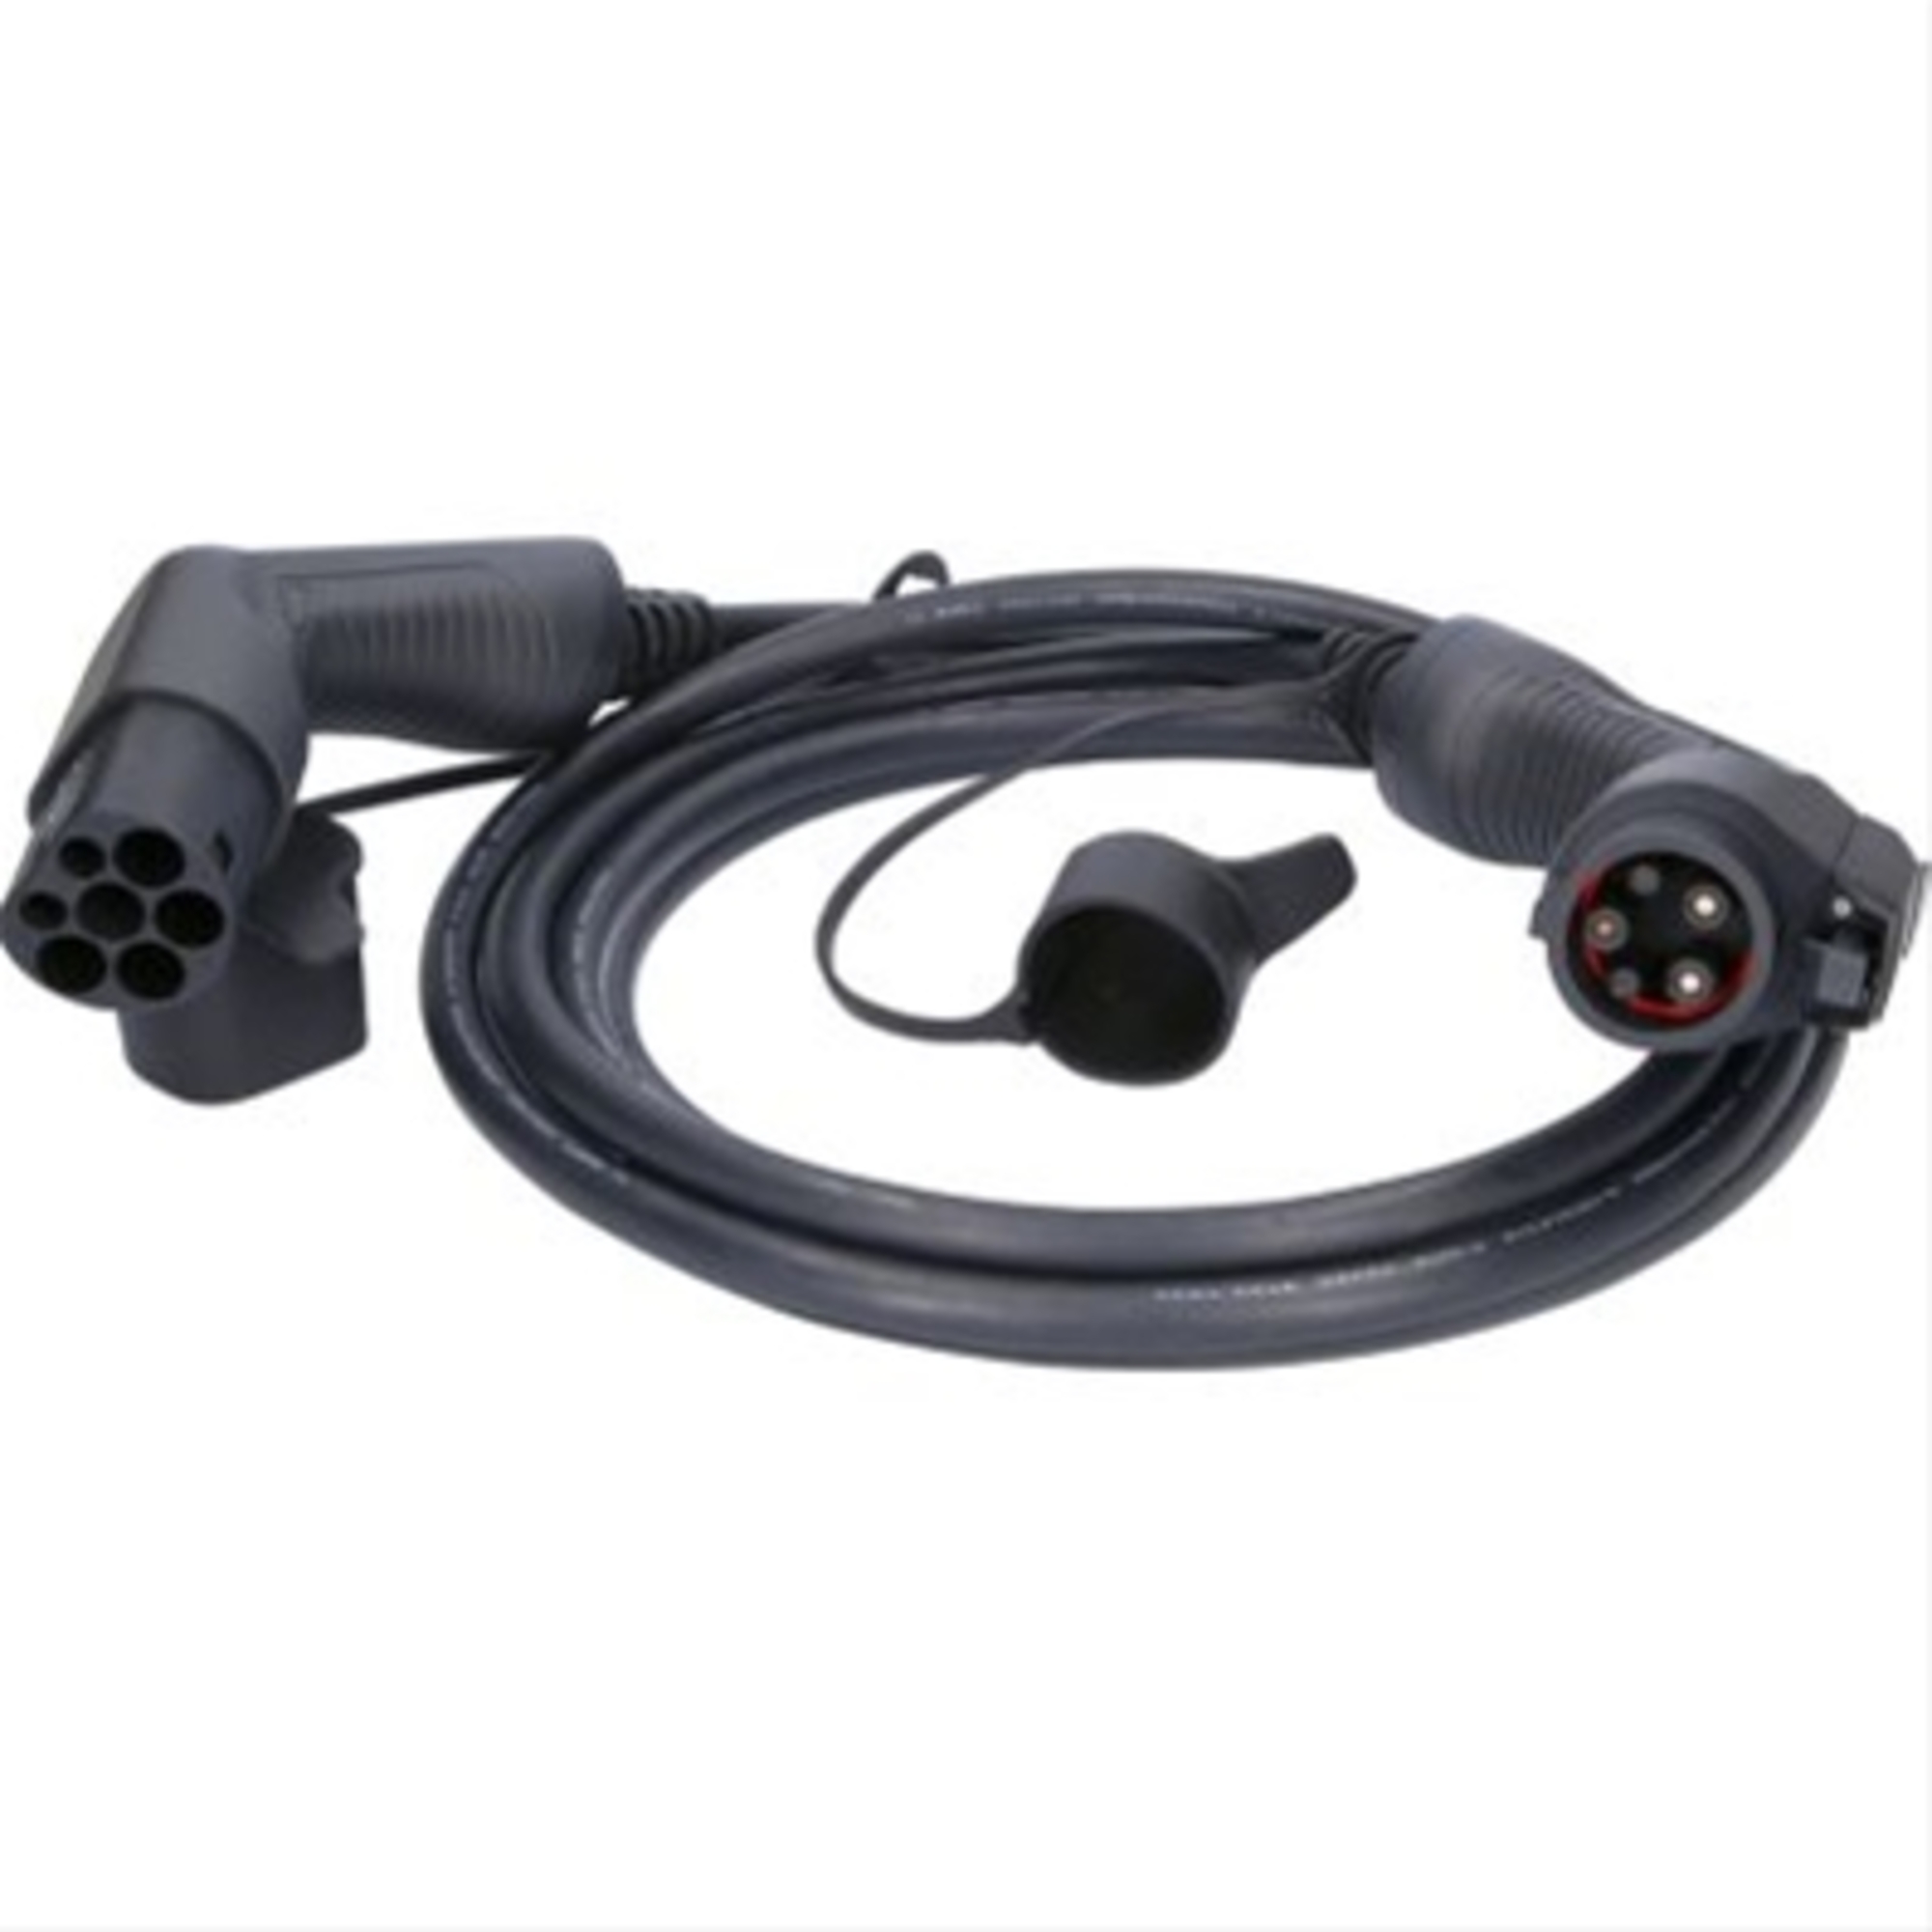 Cablu de incarcare drept typ 2 / typ 1 7.4 kw 230 v 32 a 5m-efuturo ks-tools